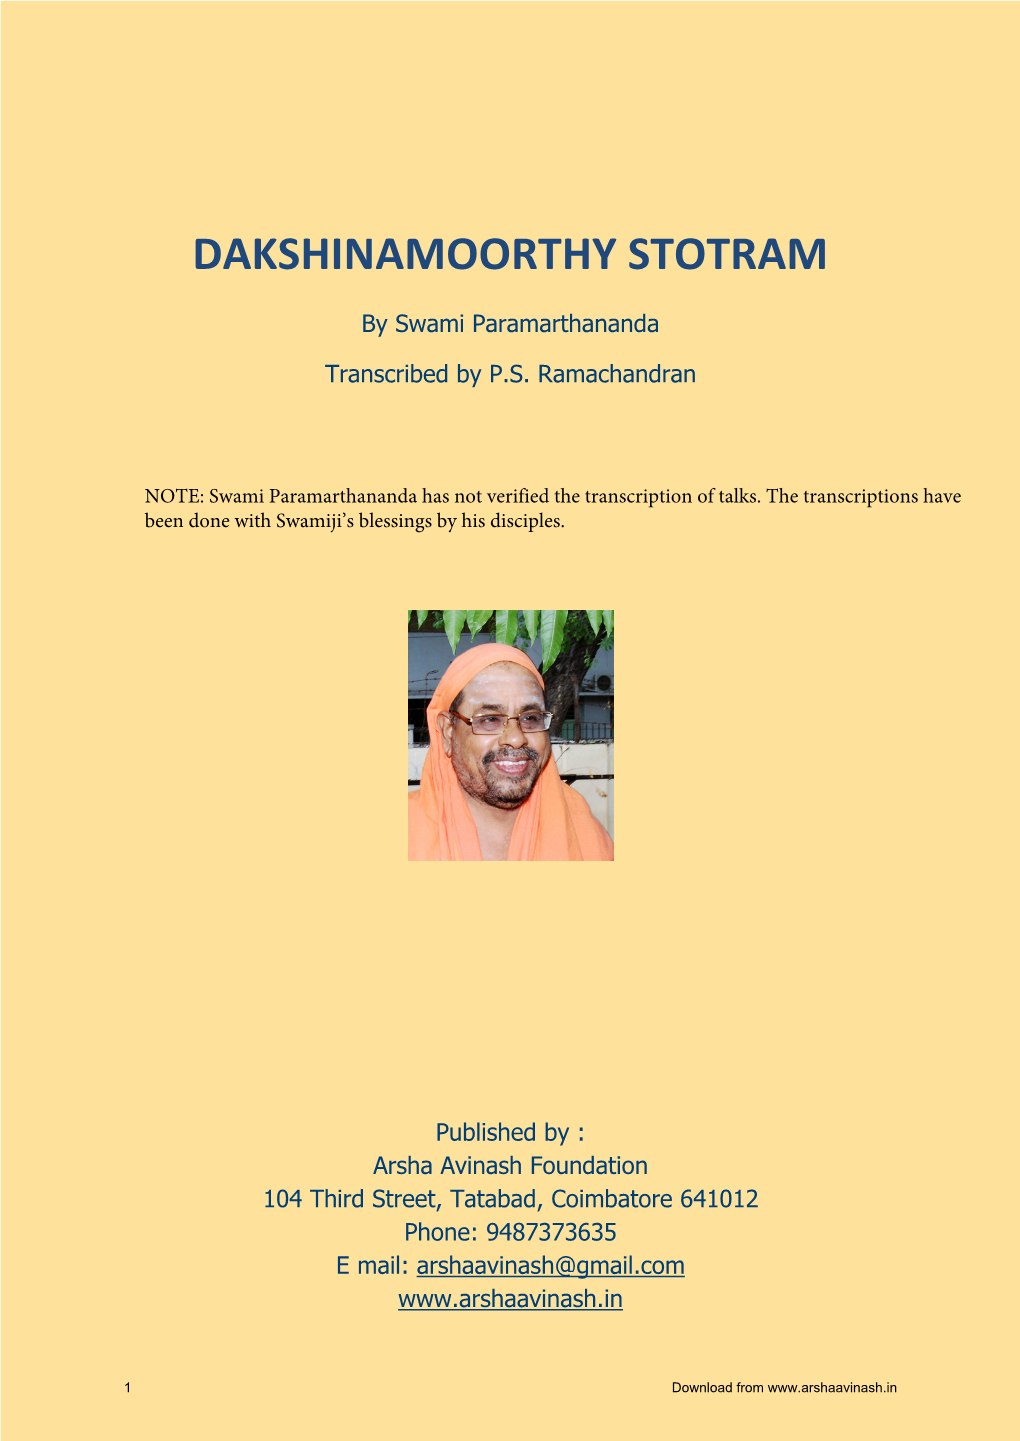 Dakshinamoorthy Stotram